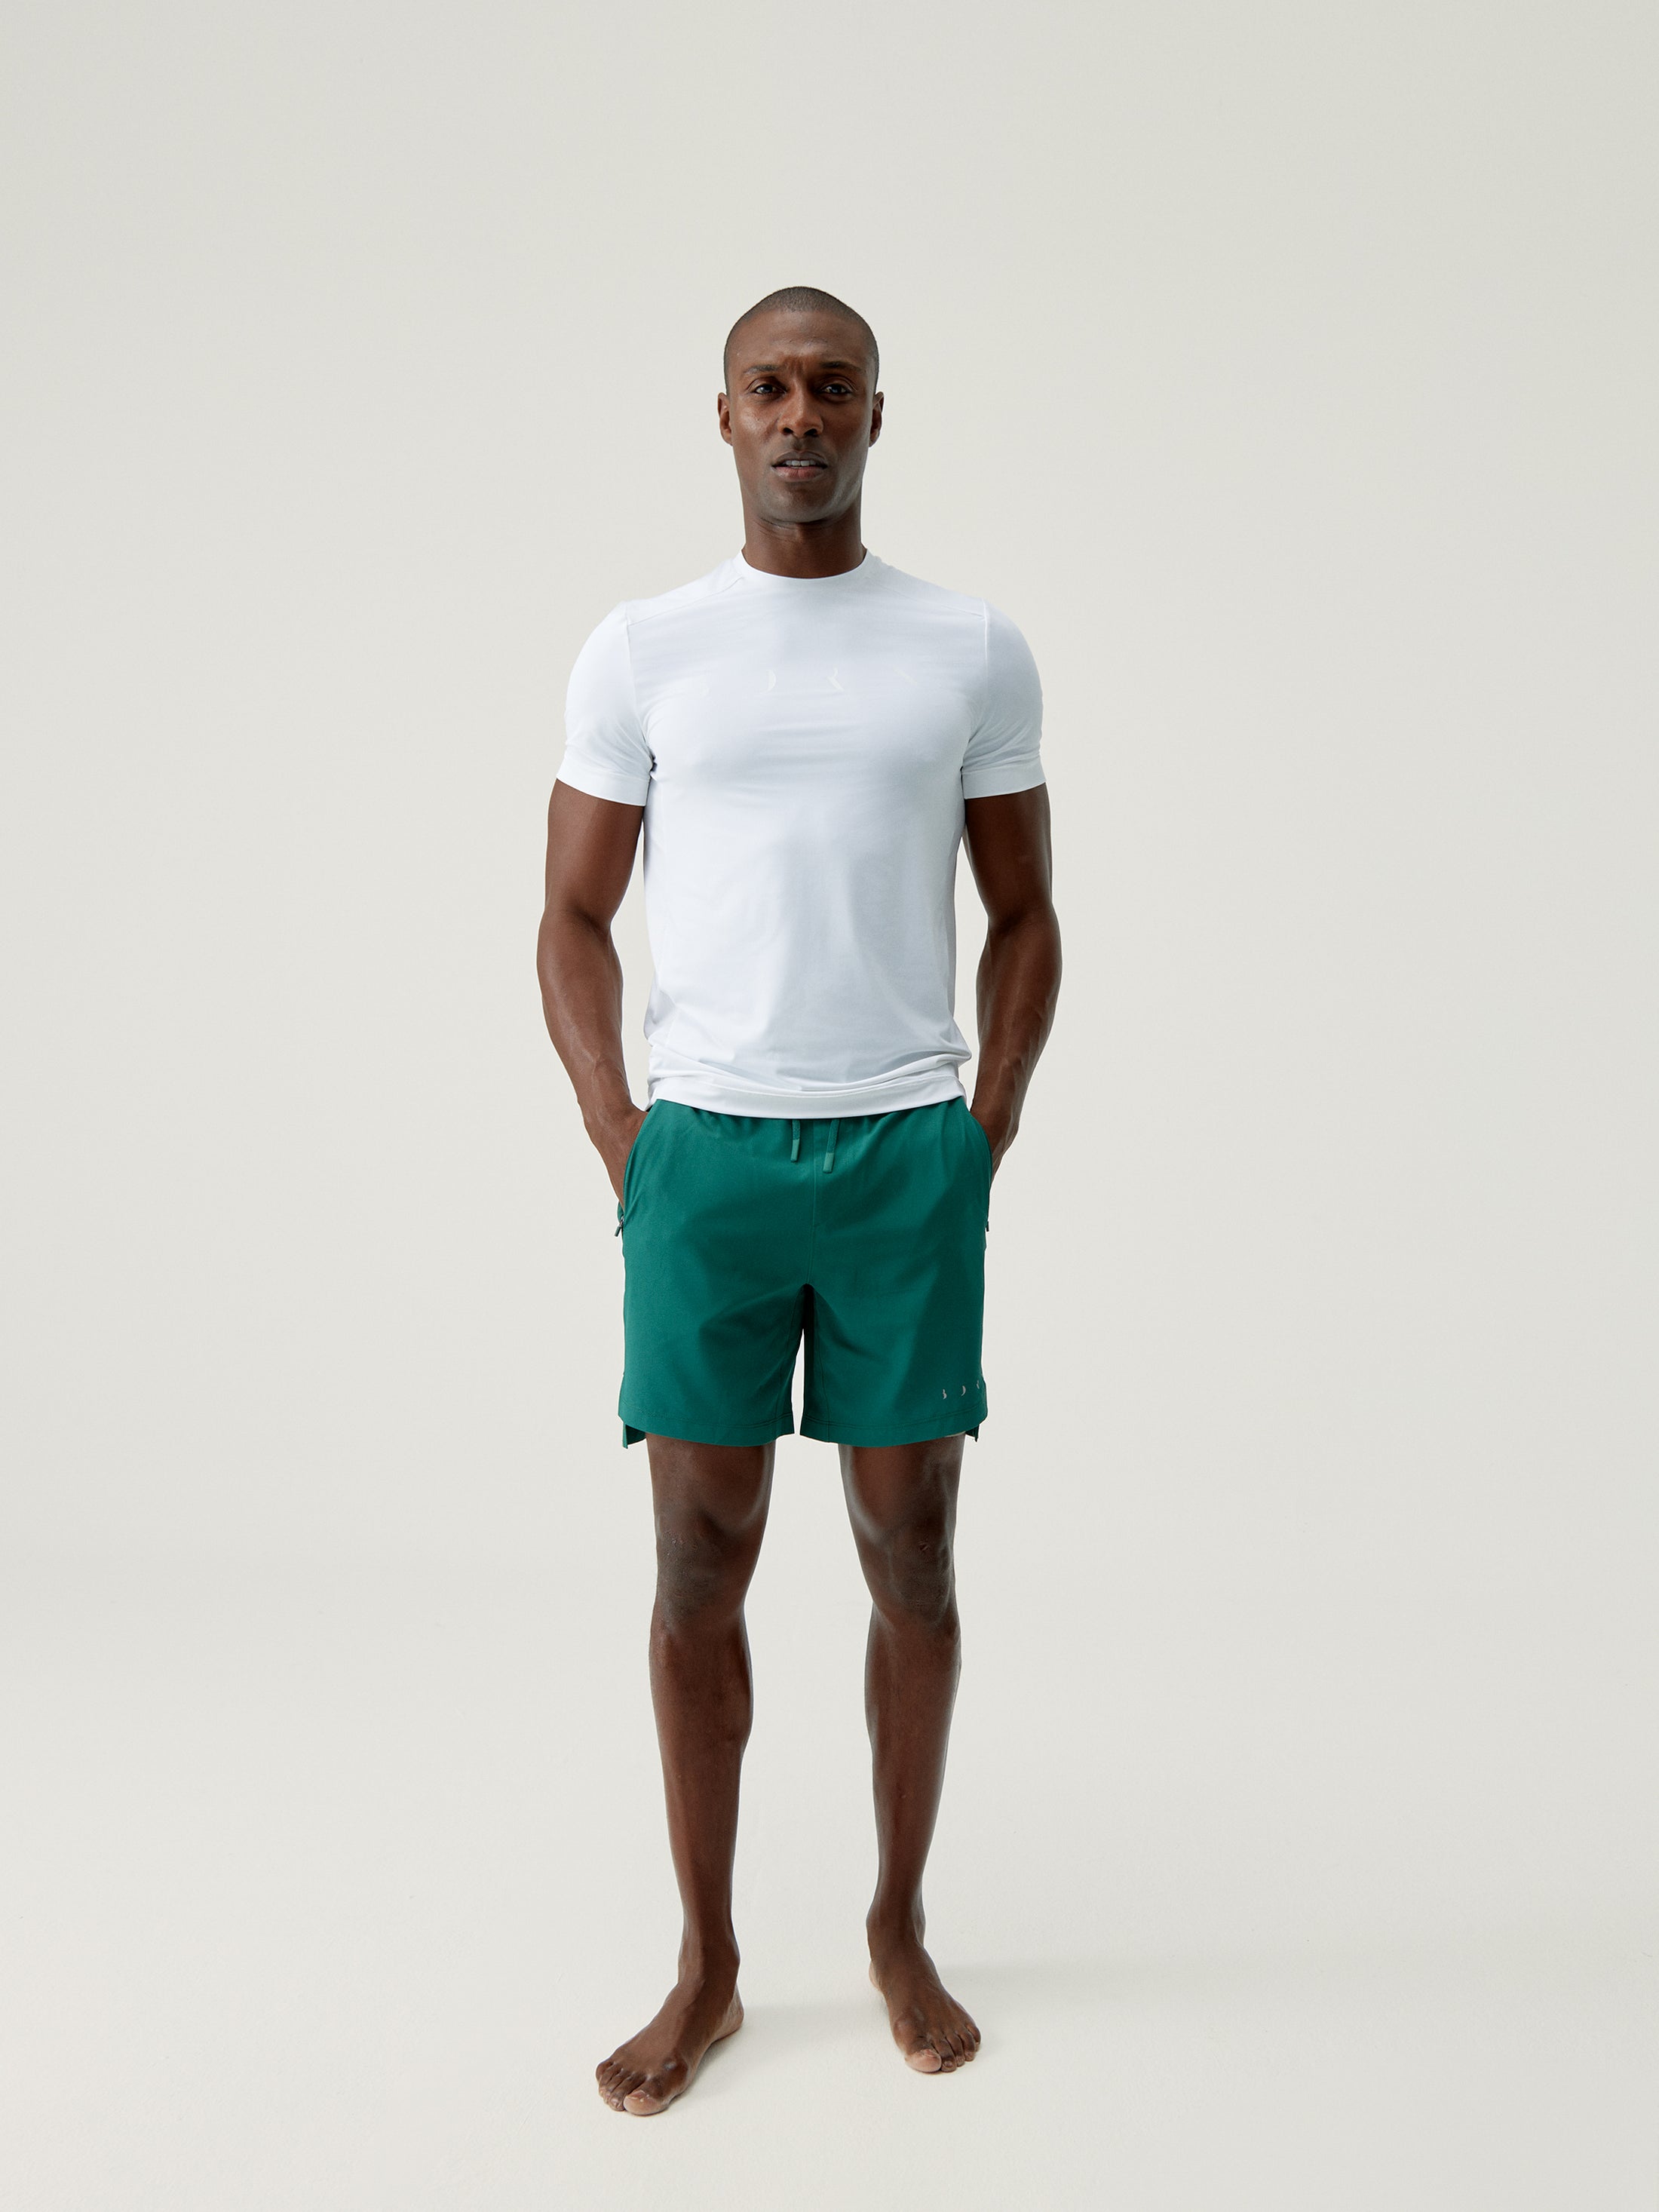 Natron Shorts in Basil Green/Rock